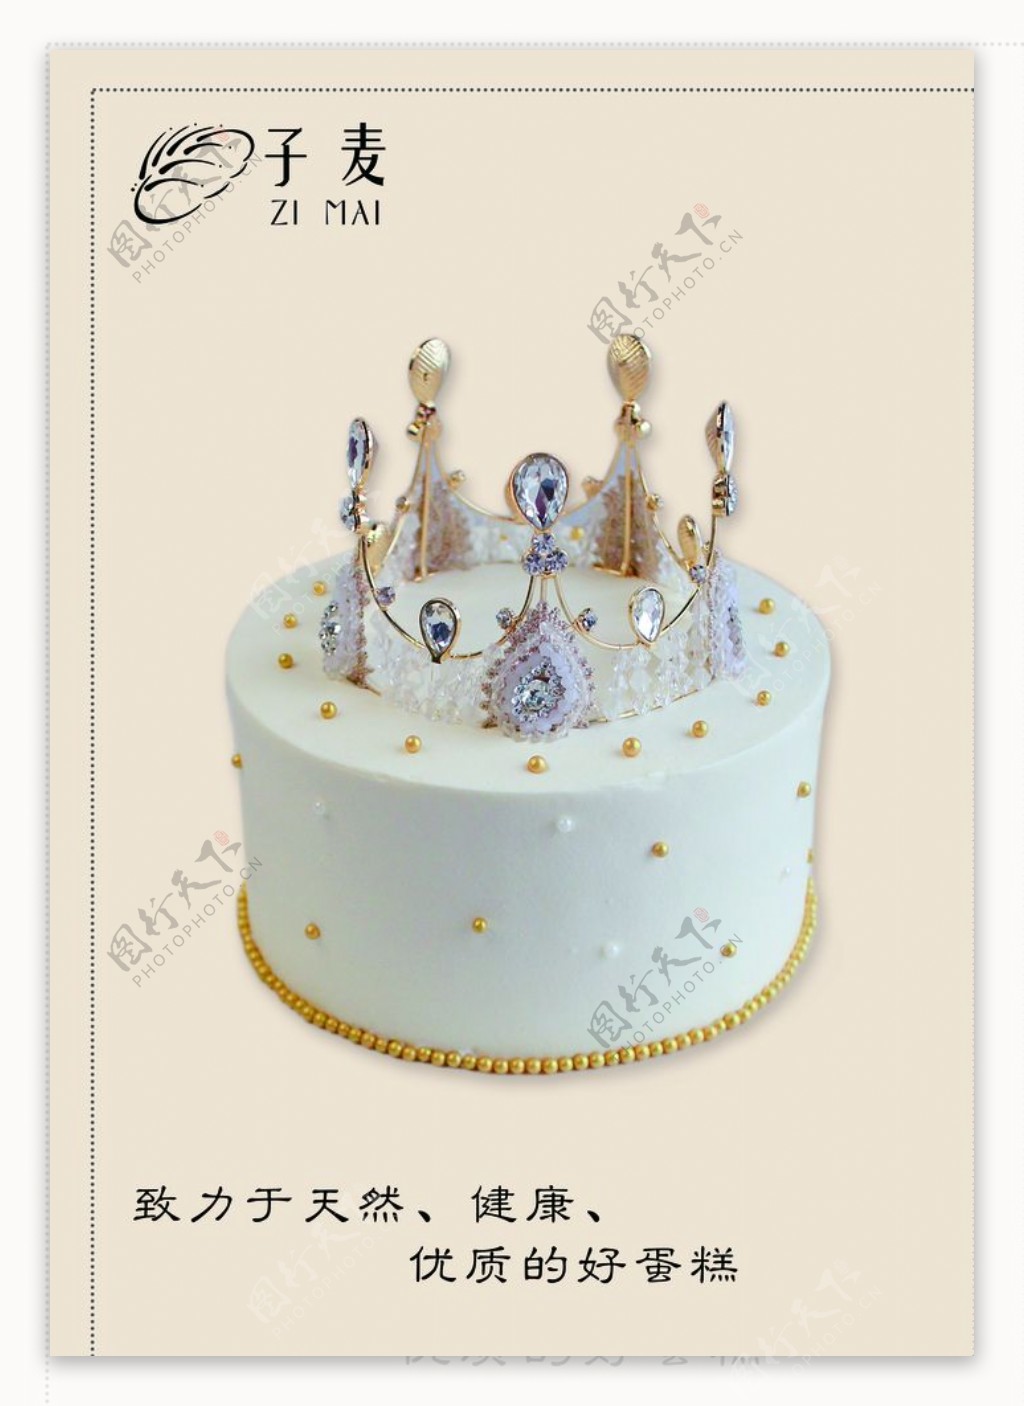 生日蛋糕皇冠的由来-生日蛋糕的由来